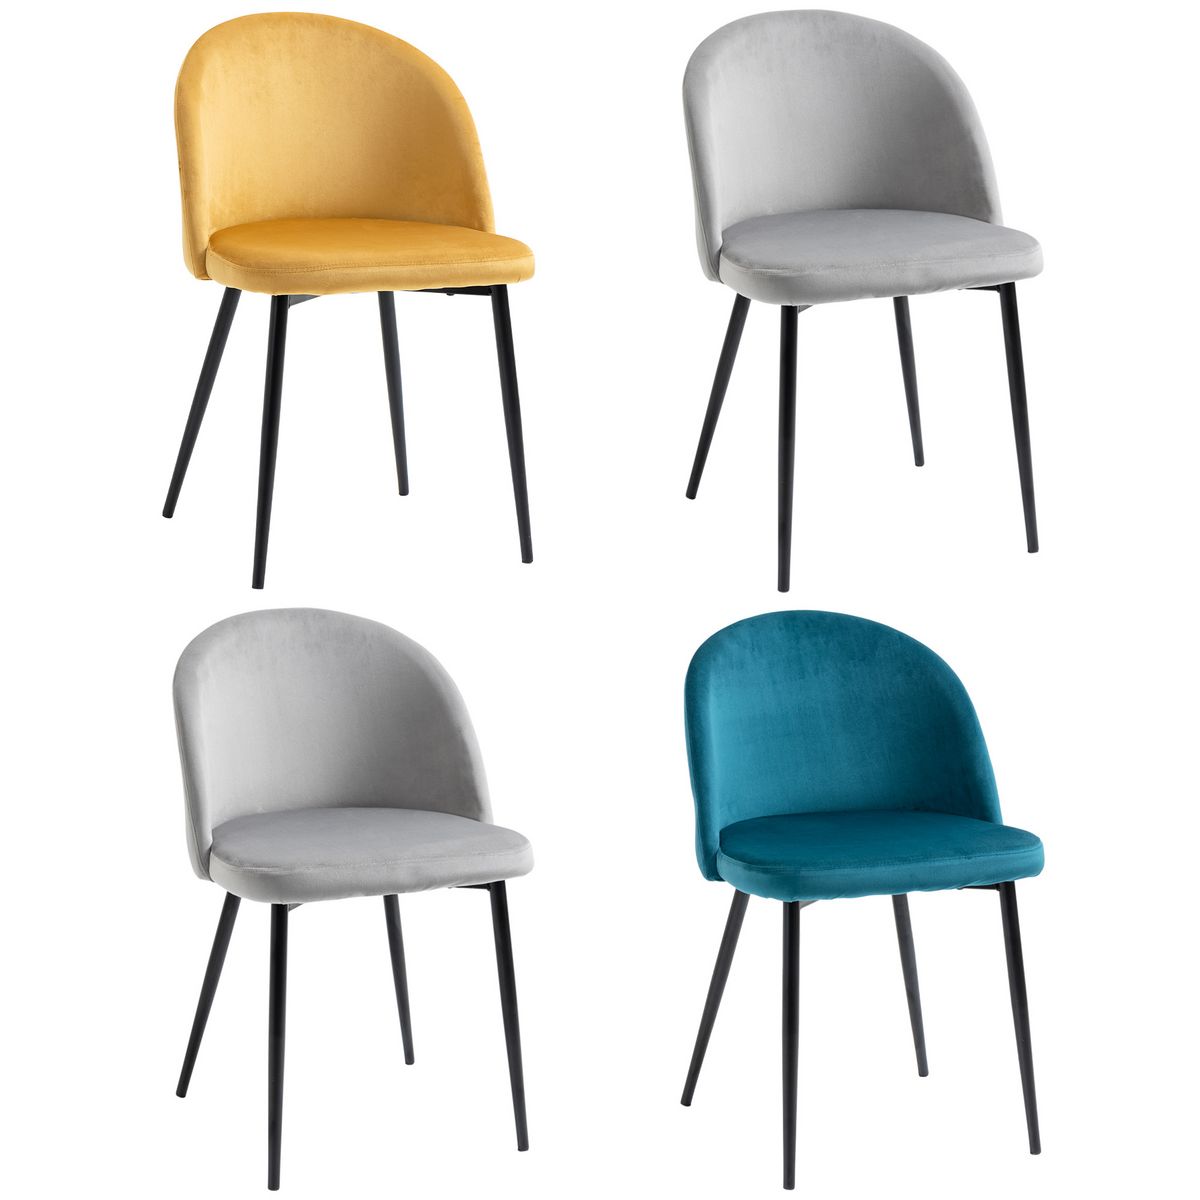 HOMCOM Chaises de visiteur design scandinave - lot de 4 chaises - velours gris bleu canard moutarde